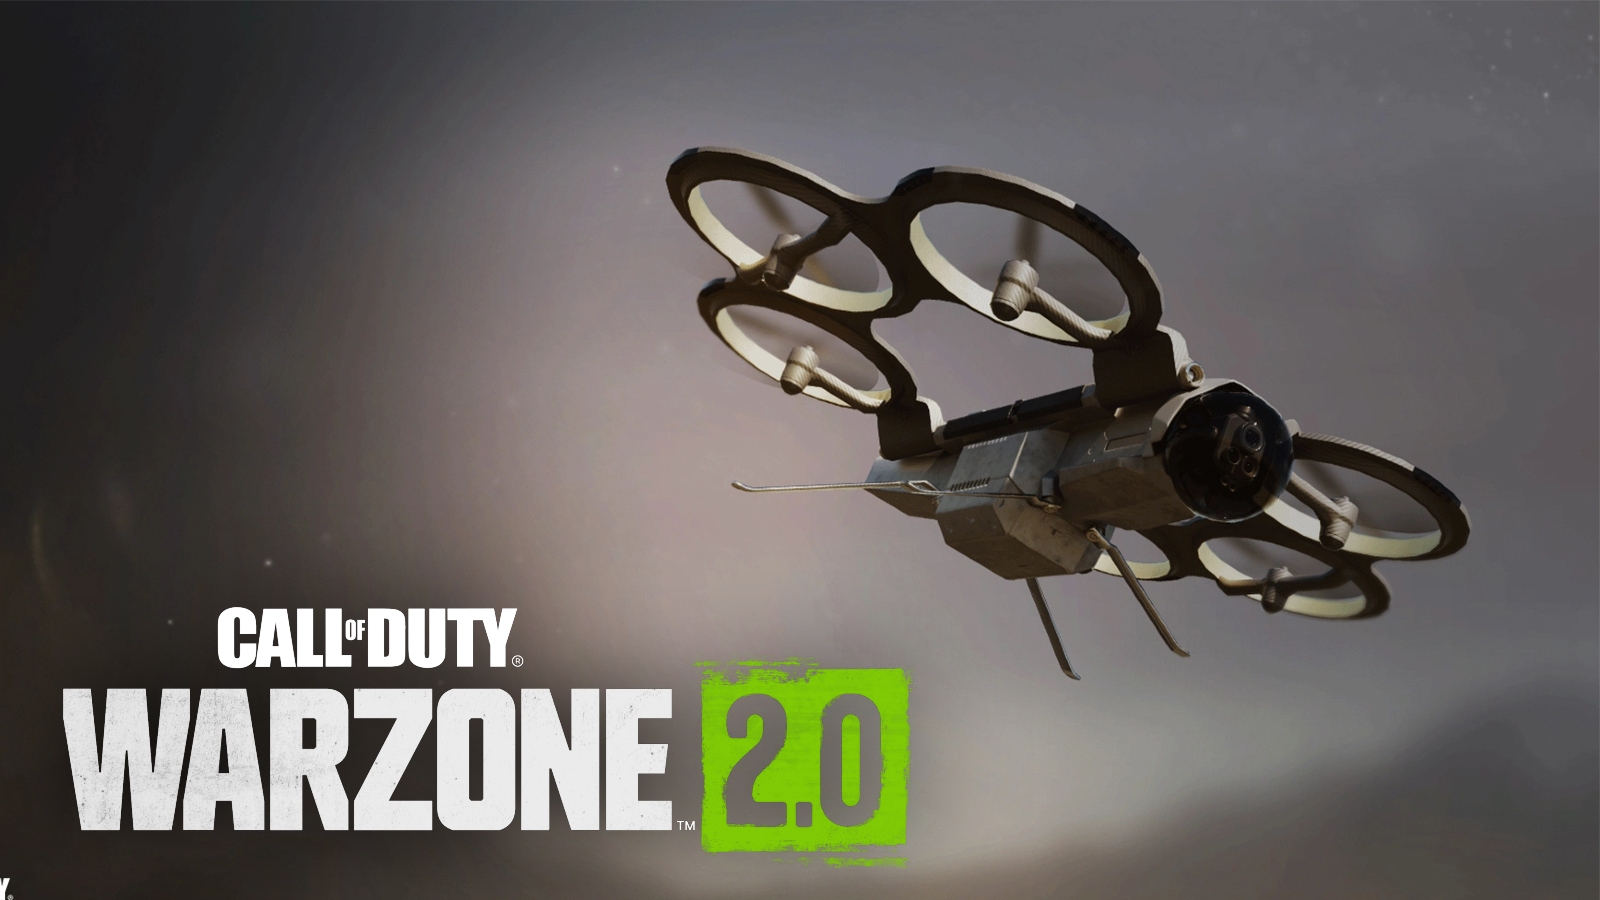 Twórcy rankingu Warzone 2 chwaleni za zbanowanie Cluster Mine i Bomb Drone